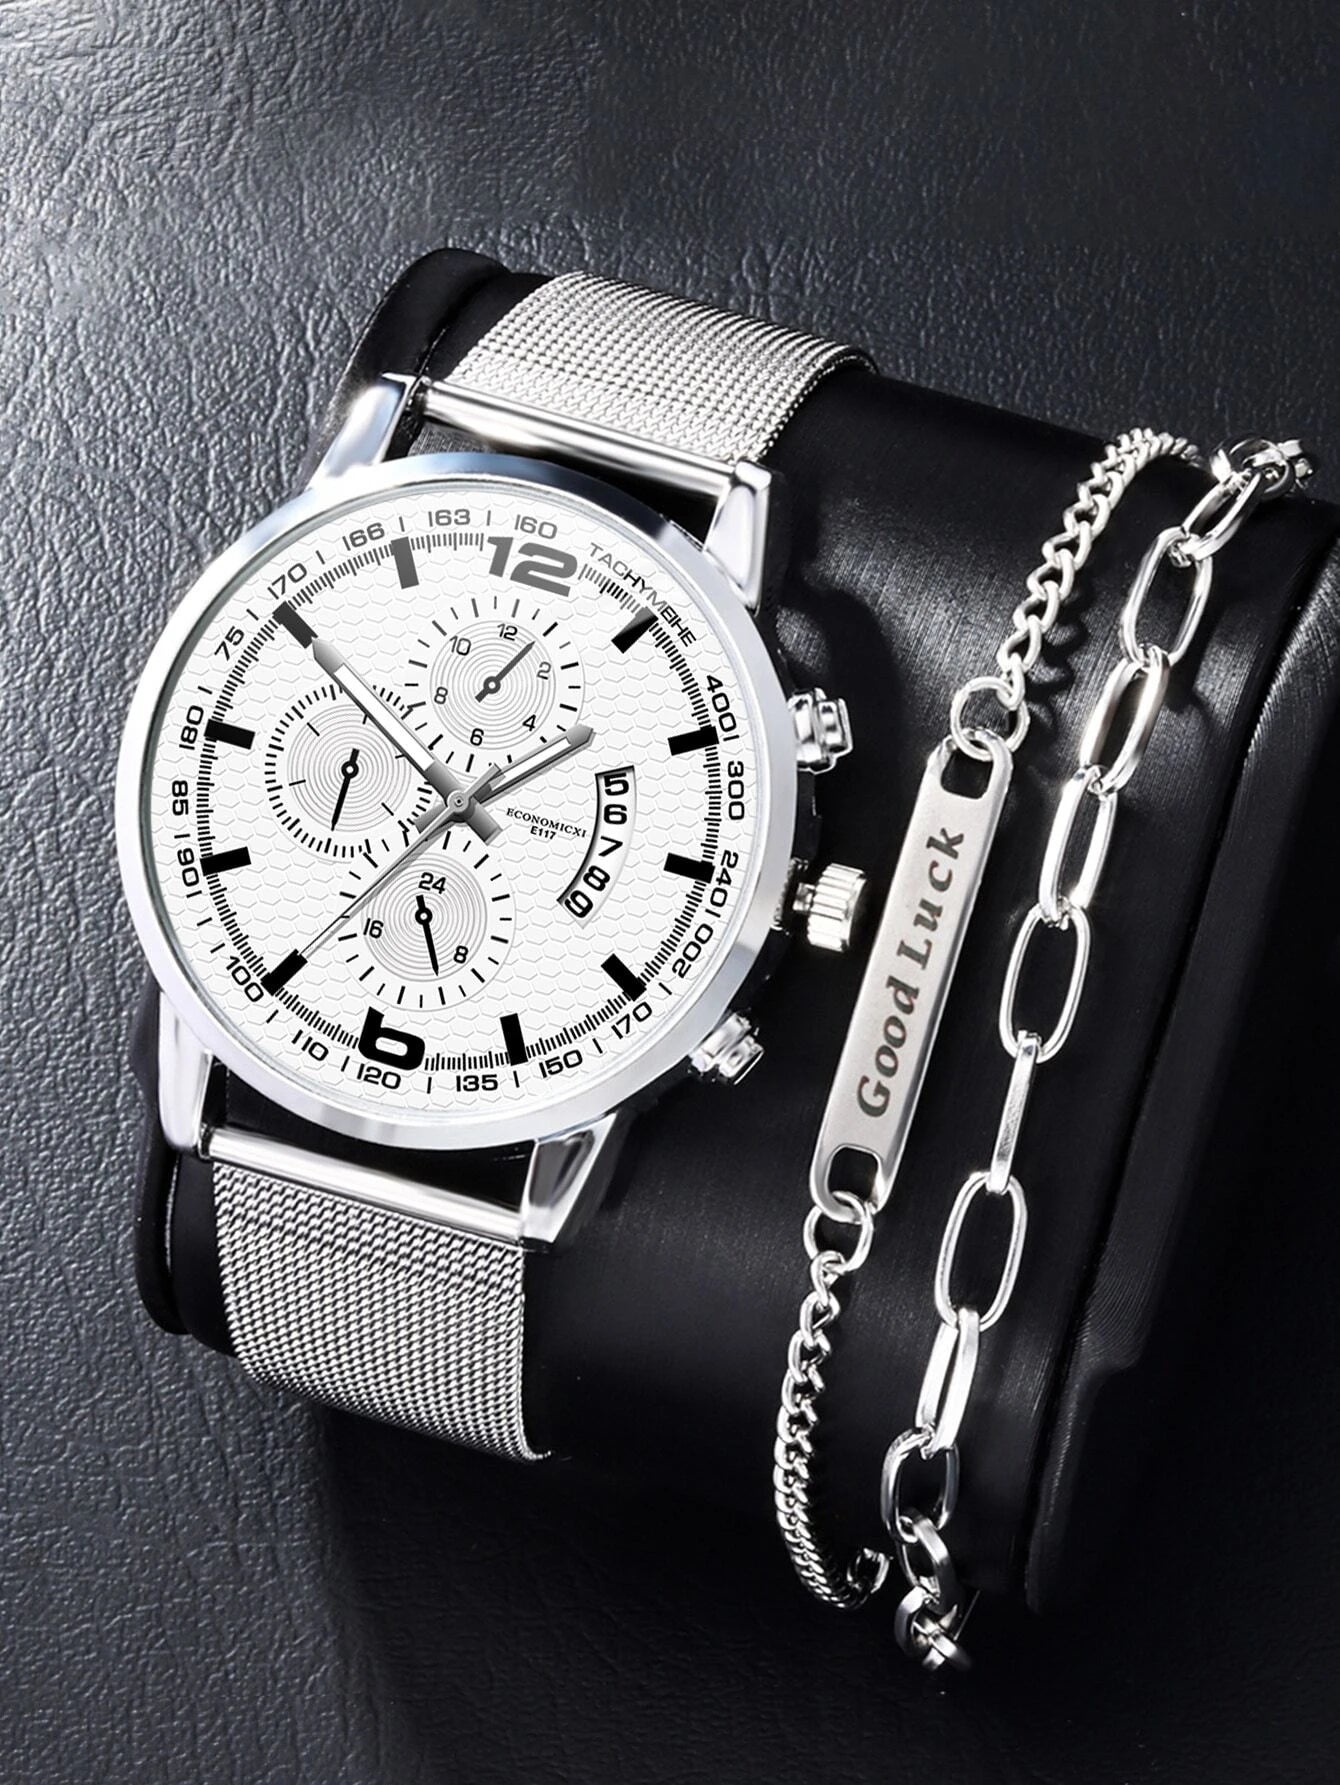 1pc Men Silver Zinc Alloy Strap Business Date Round Dial Quartz Watch & 1pc Bracelet, For Daily Life